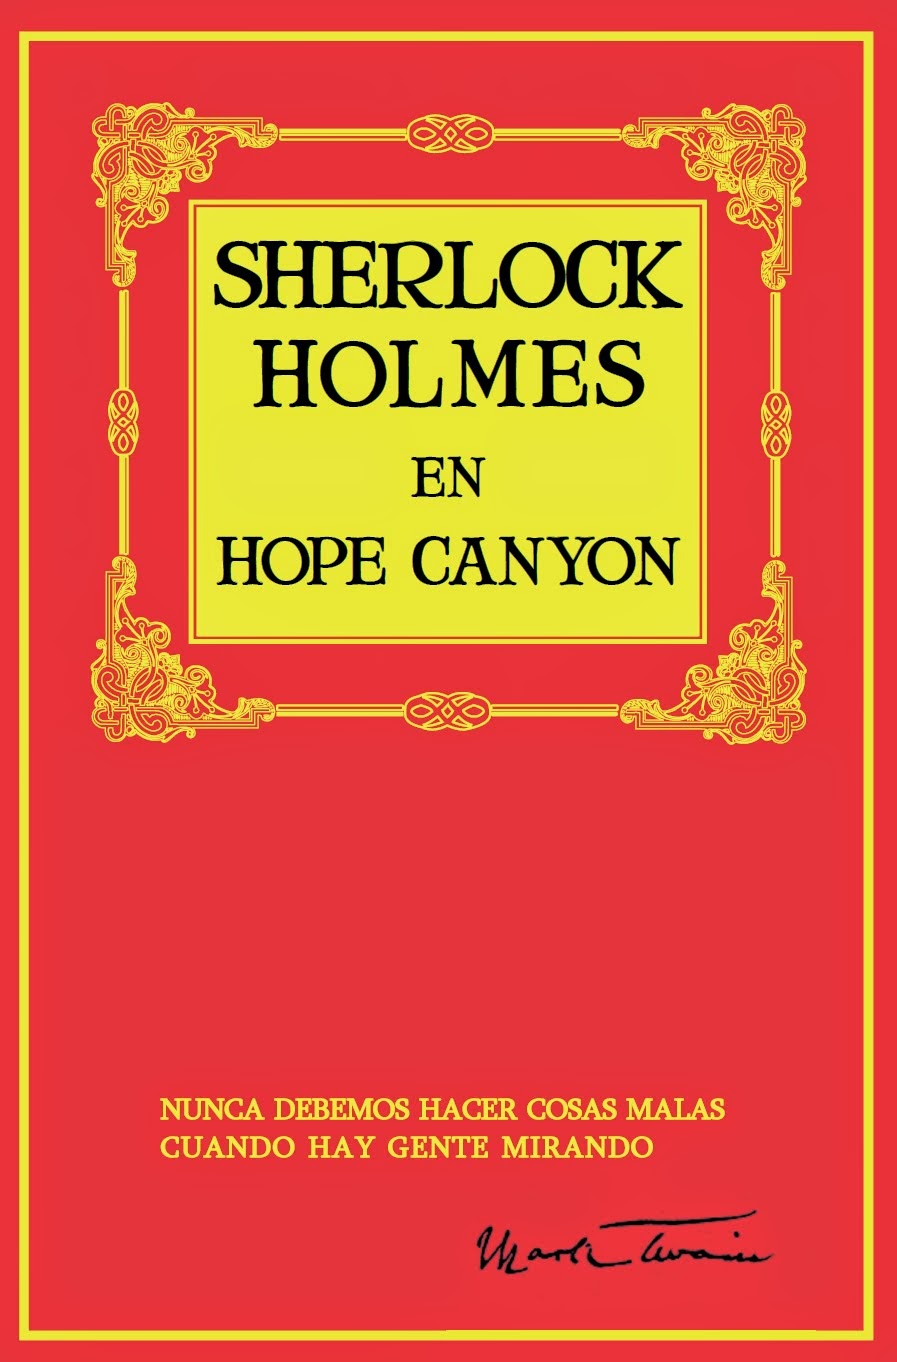 SHERLOCK HOLMES EN HOPE CANYON, por Mark Twain. 12 euros